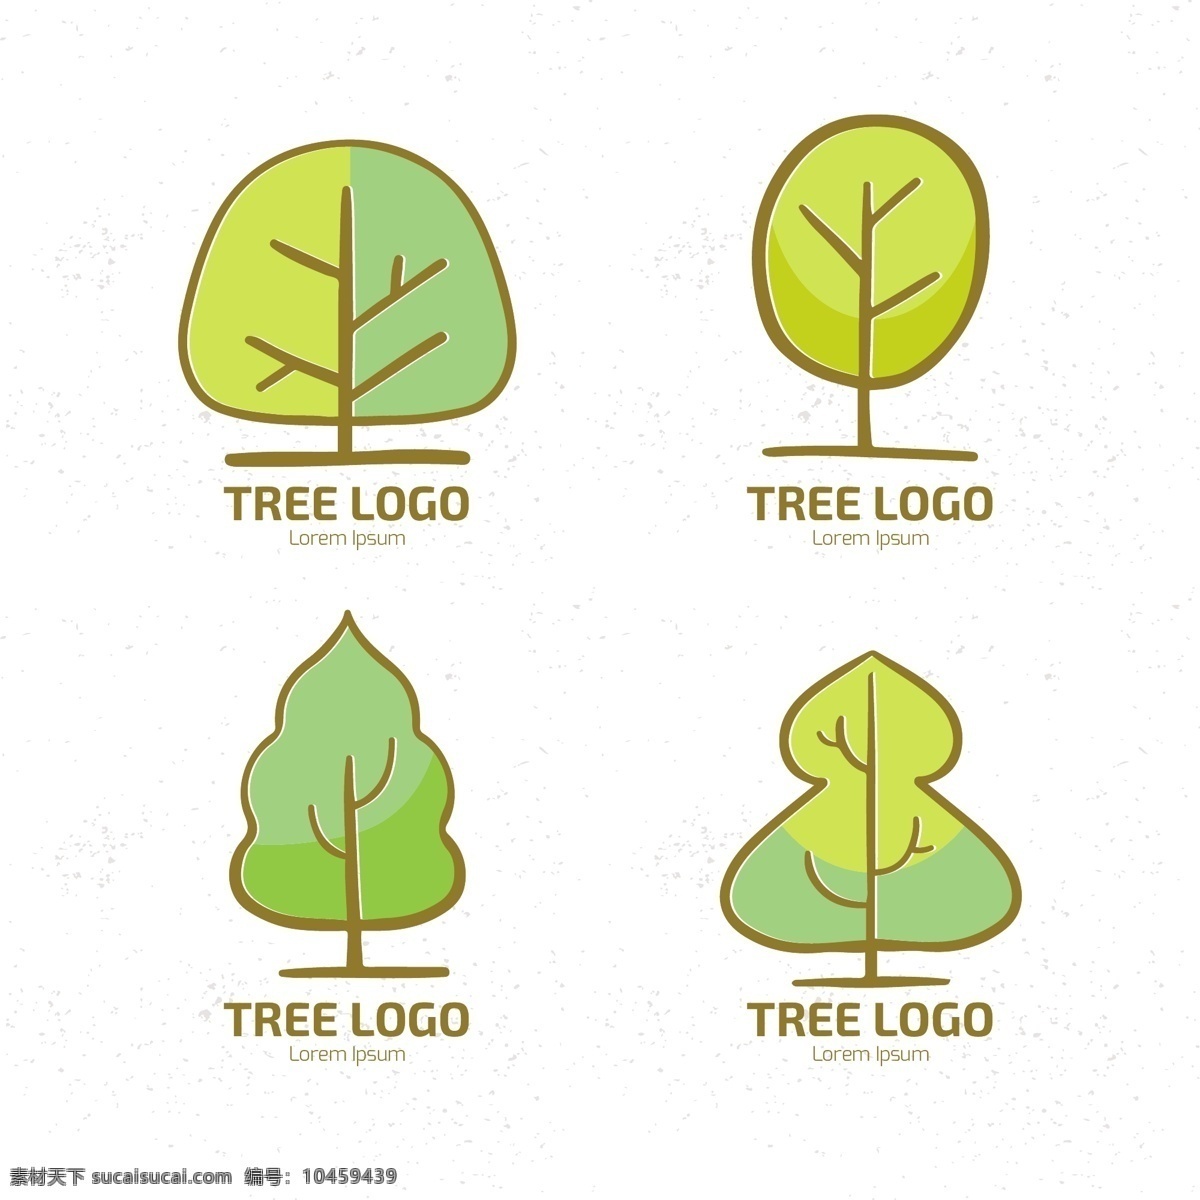 款 创意 卡通 树 logo 图案 装饰 彩色 环保 植物 绿叶 元素 卡通logo 树木合集 元素设计 设计素材 图片合集 绿树 夏天